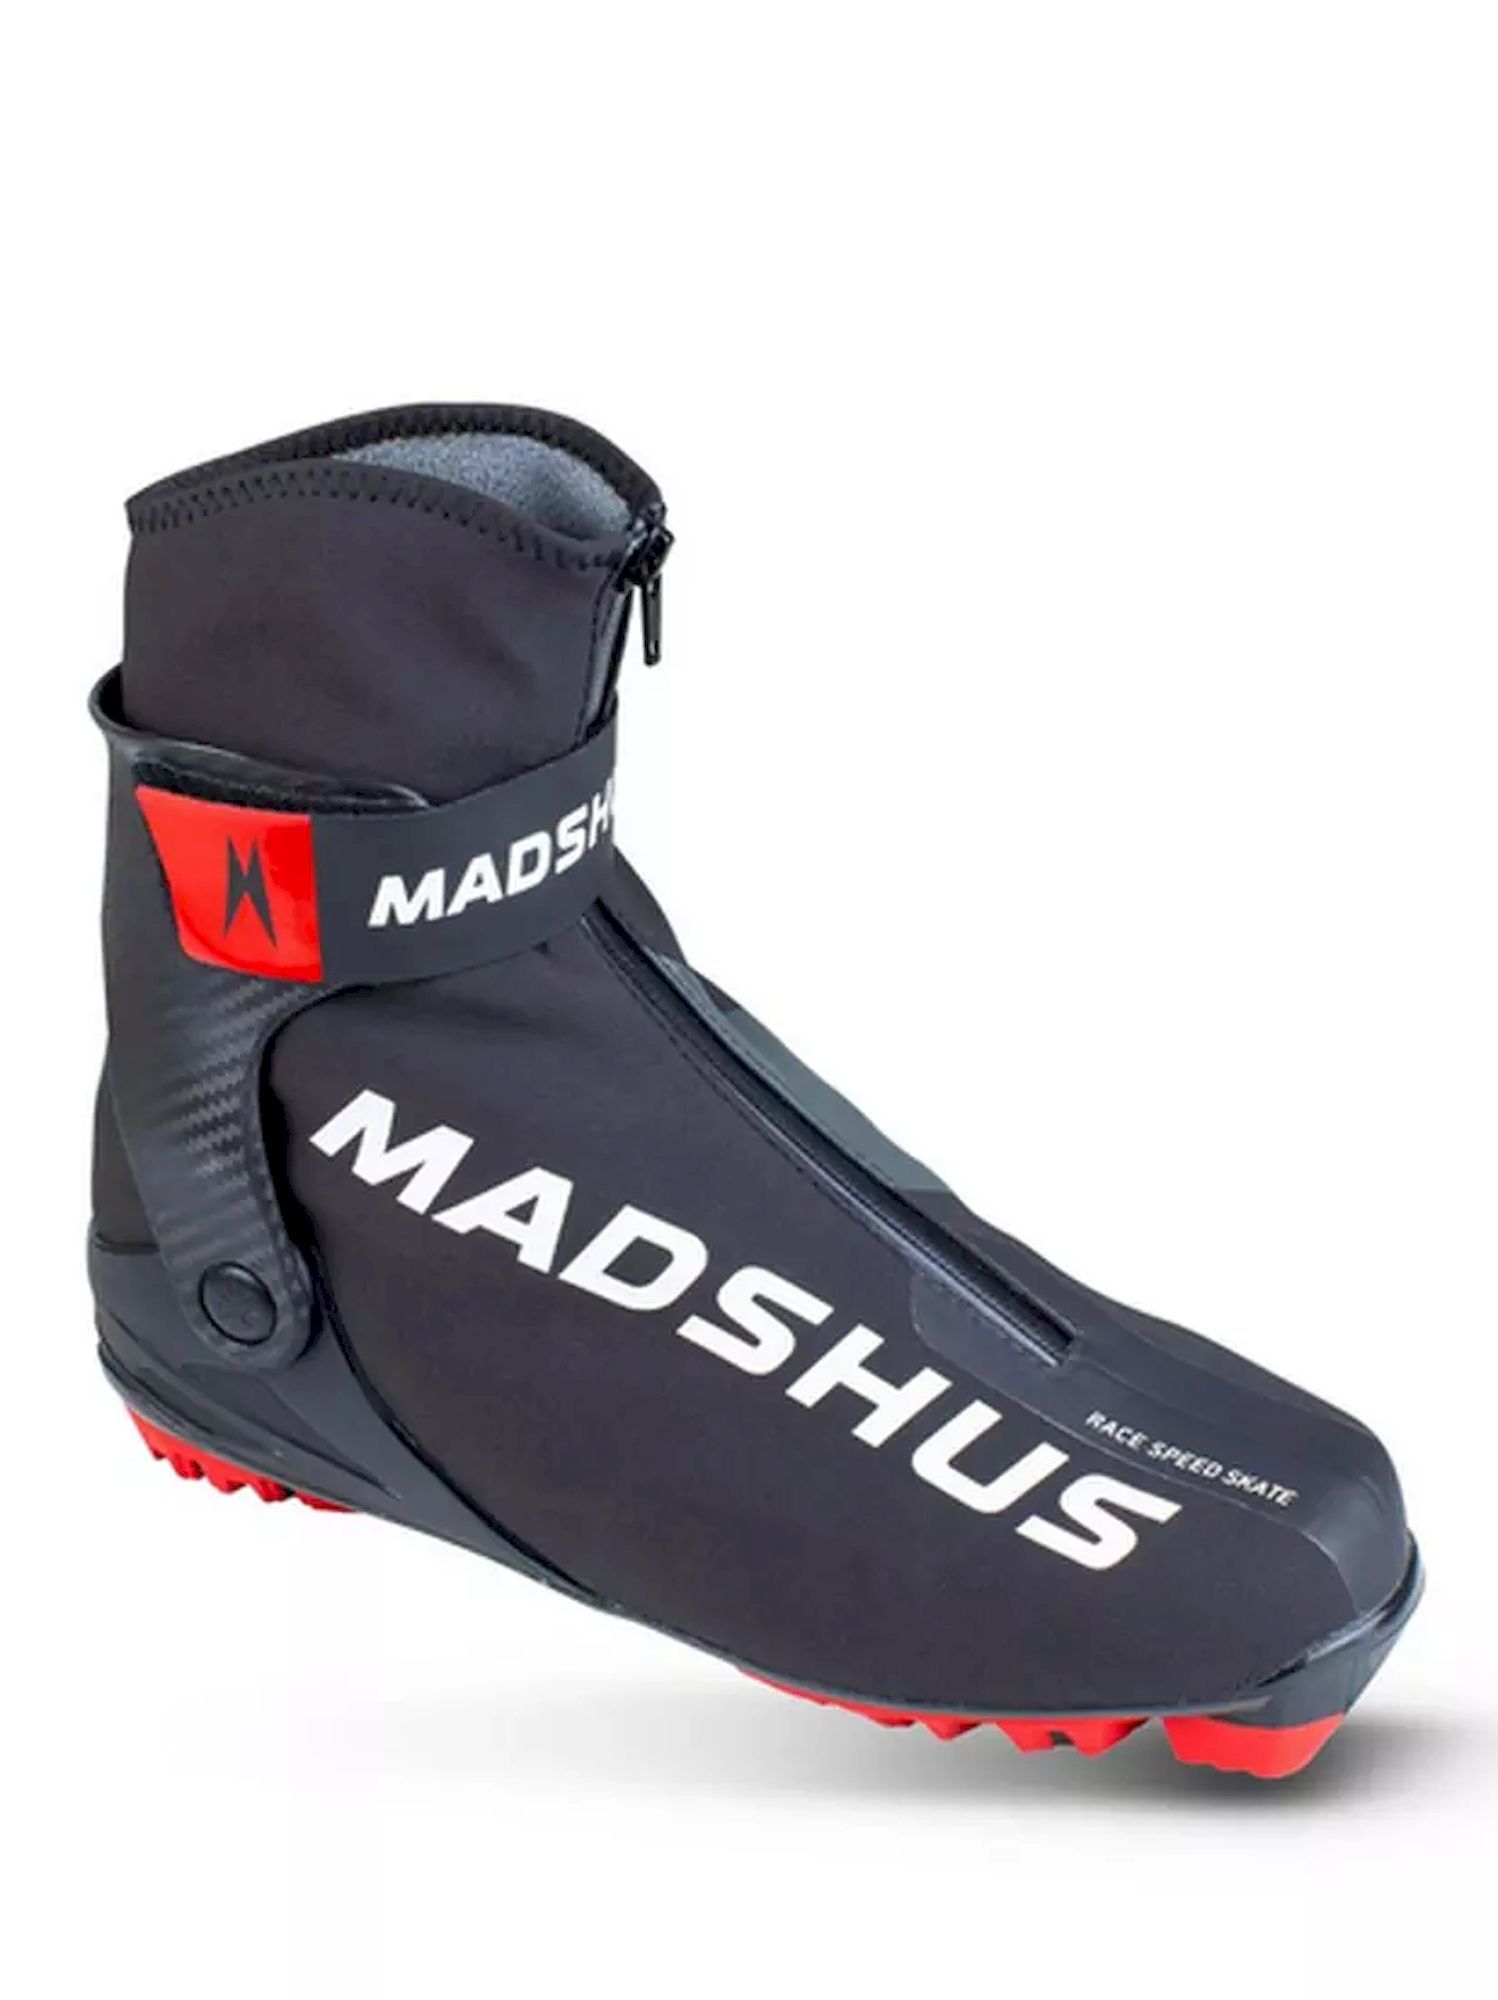 Madshus Race Speed Skate - Langlaufschuhe | Hardloop